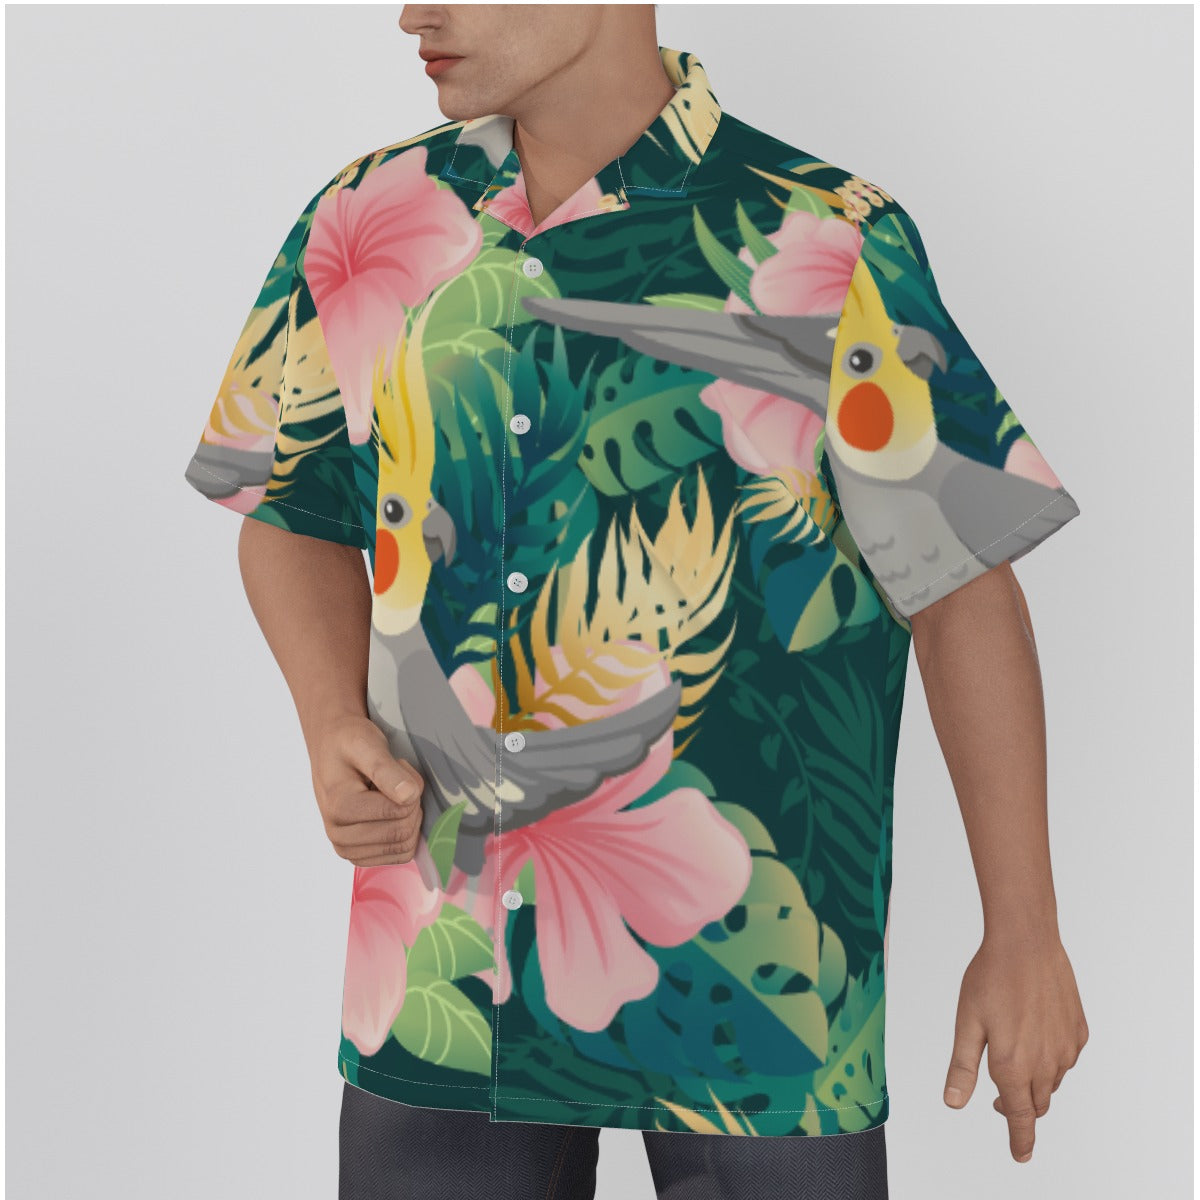 Men's Tropical Birdie Resort Shirt, Men's Hawaiian Birdie Shirt